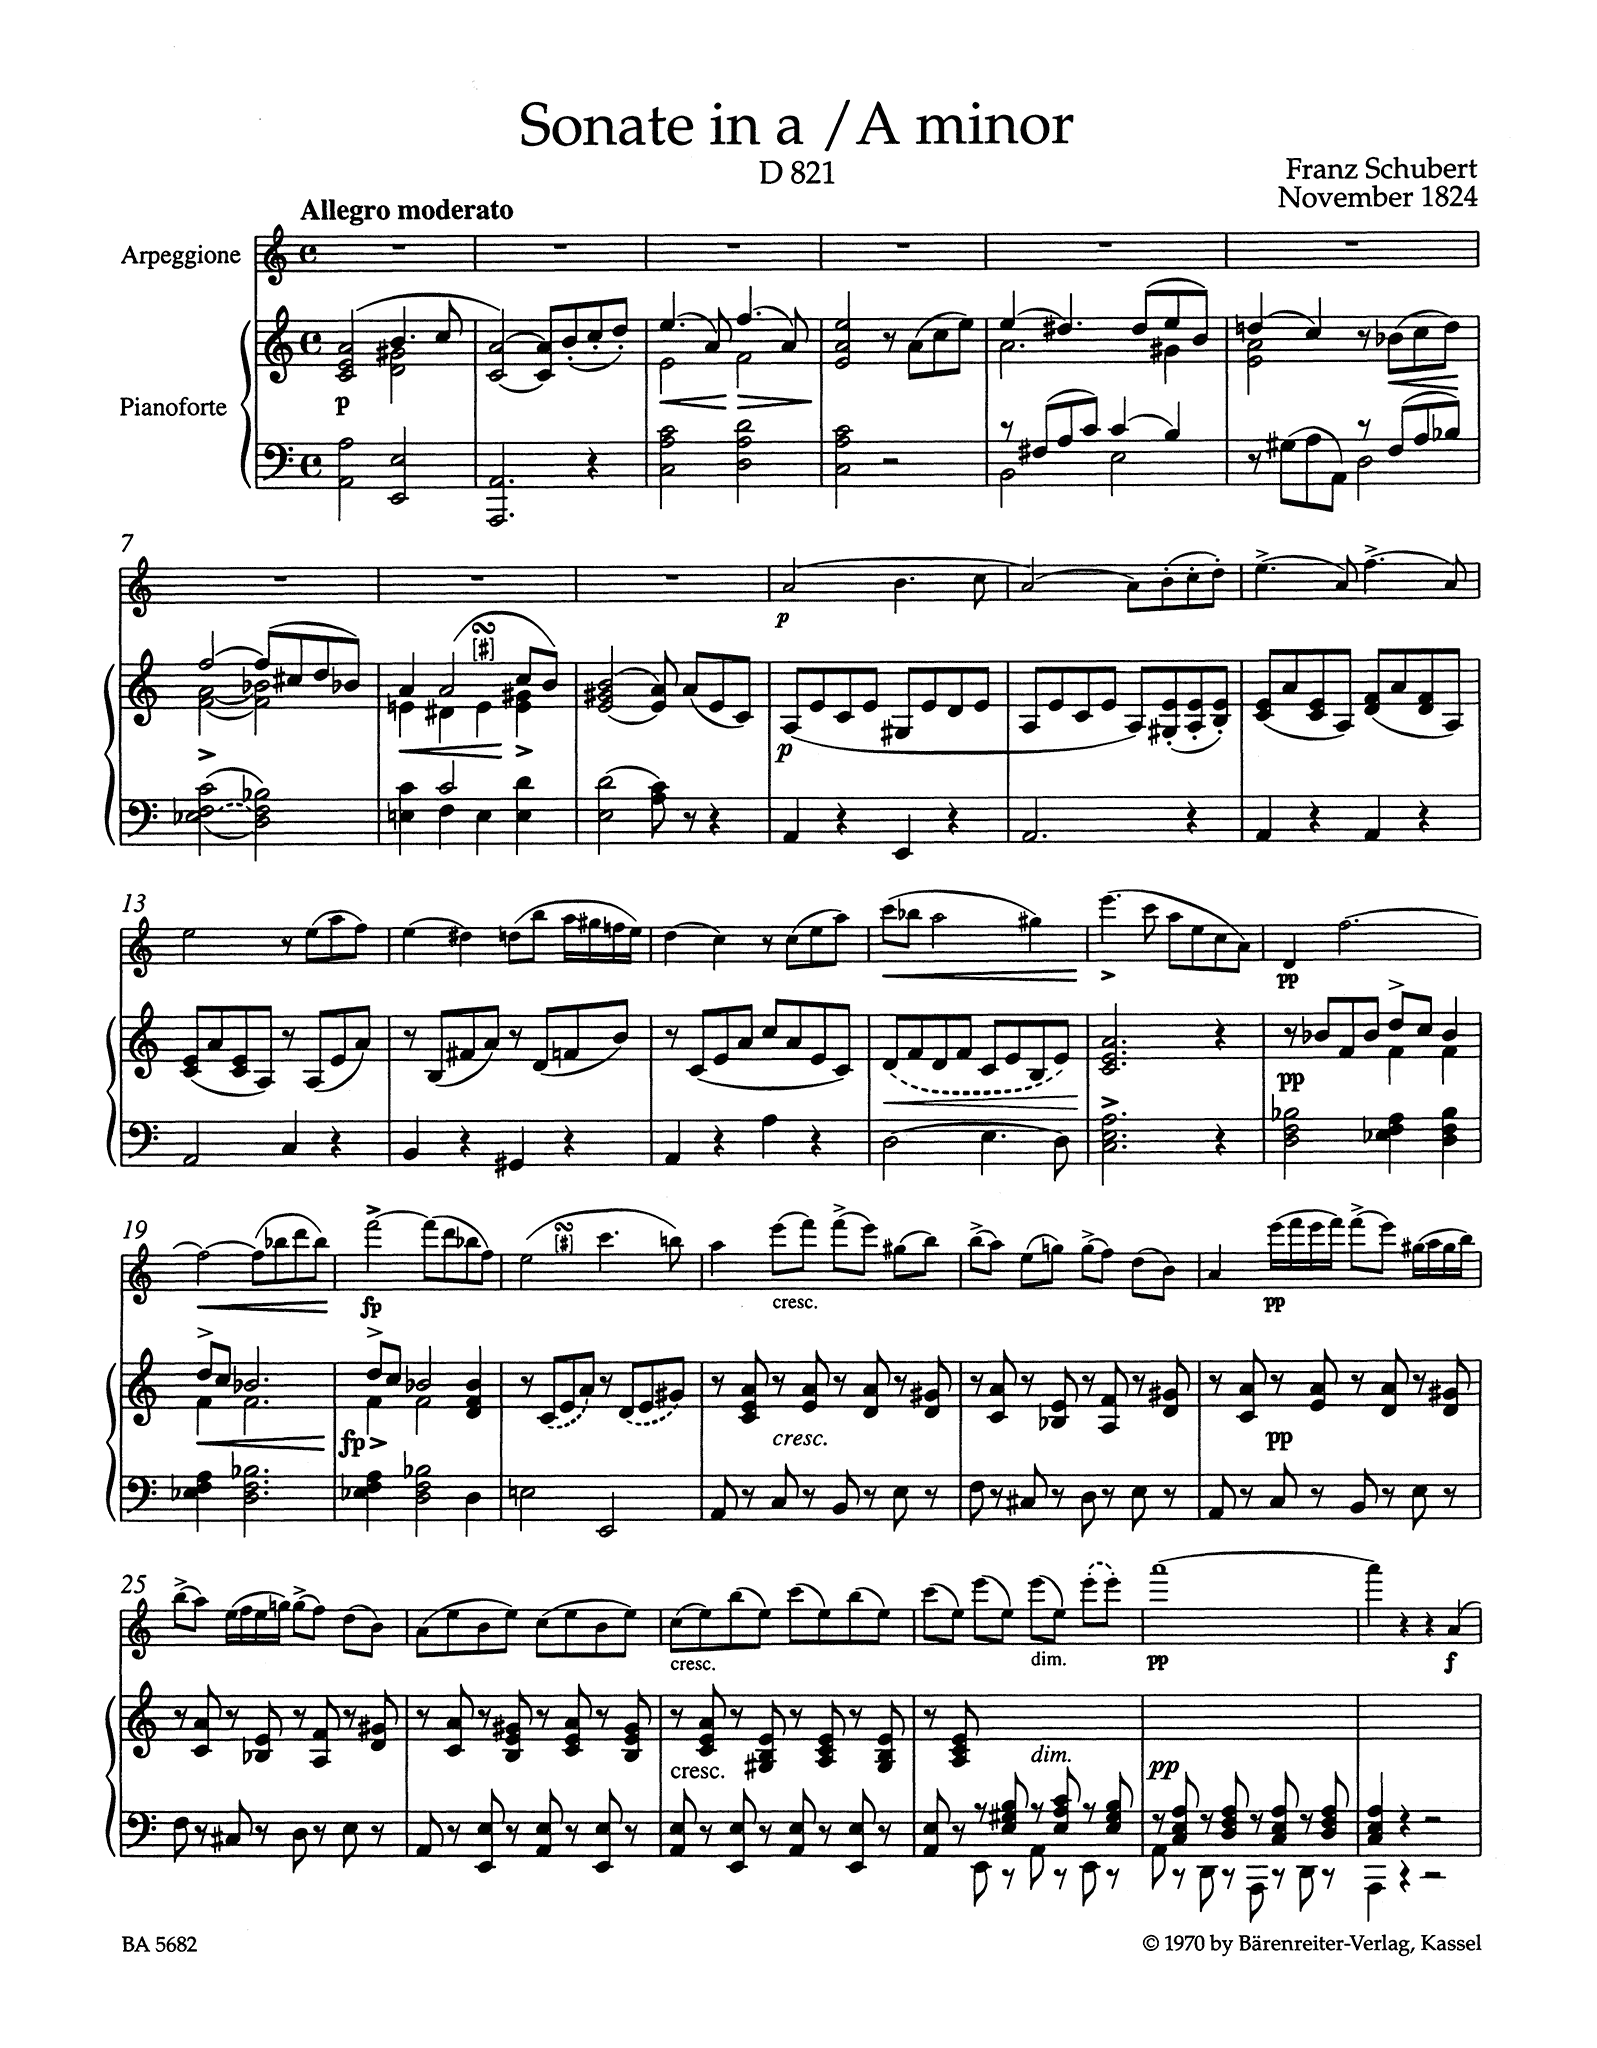 Schubert Sonata in A Minor, D. 821 ‘Arpeggione’ - Movement 1